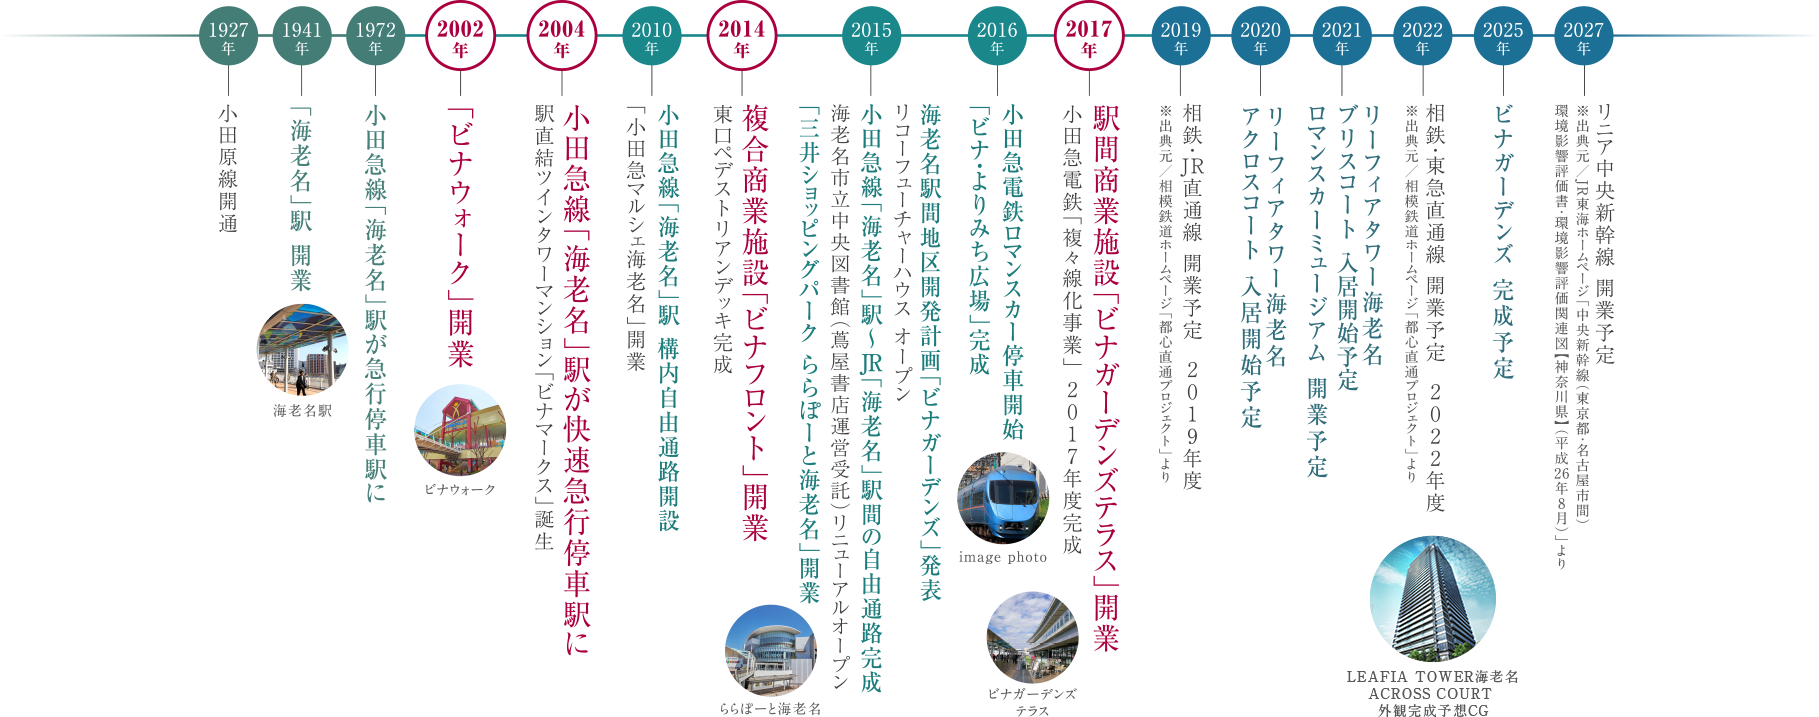 それは、小田急が追い続けた夢、海老名駅×小田急 駅周辺開発と発展の歩み